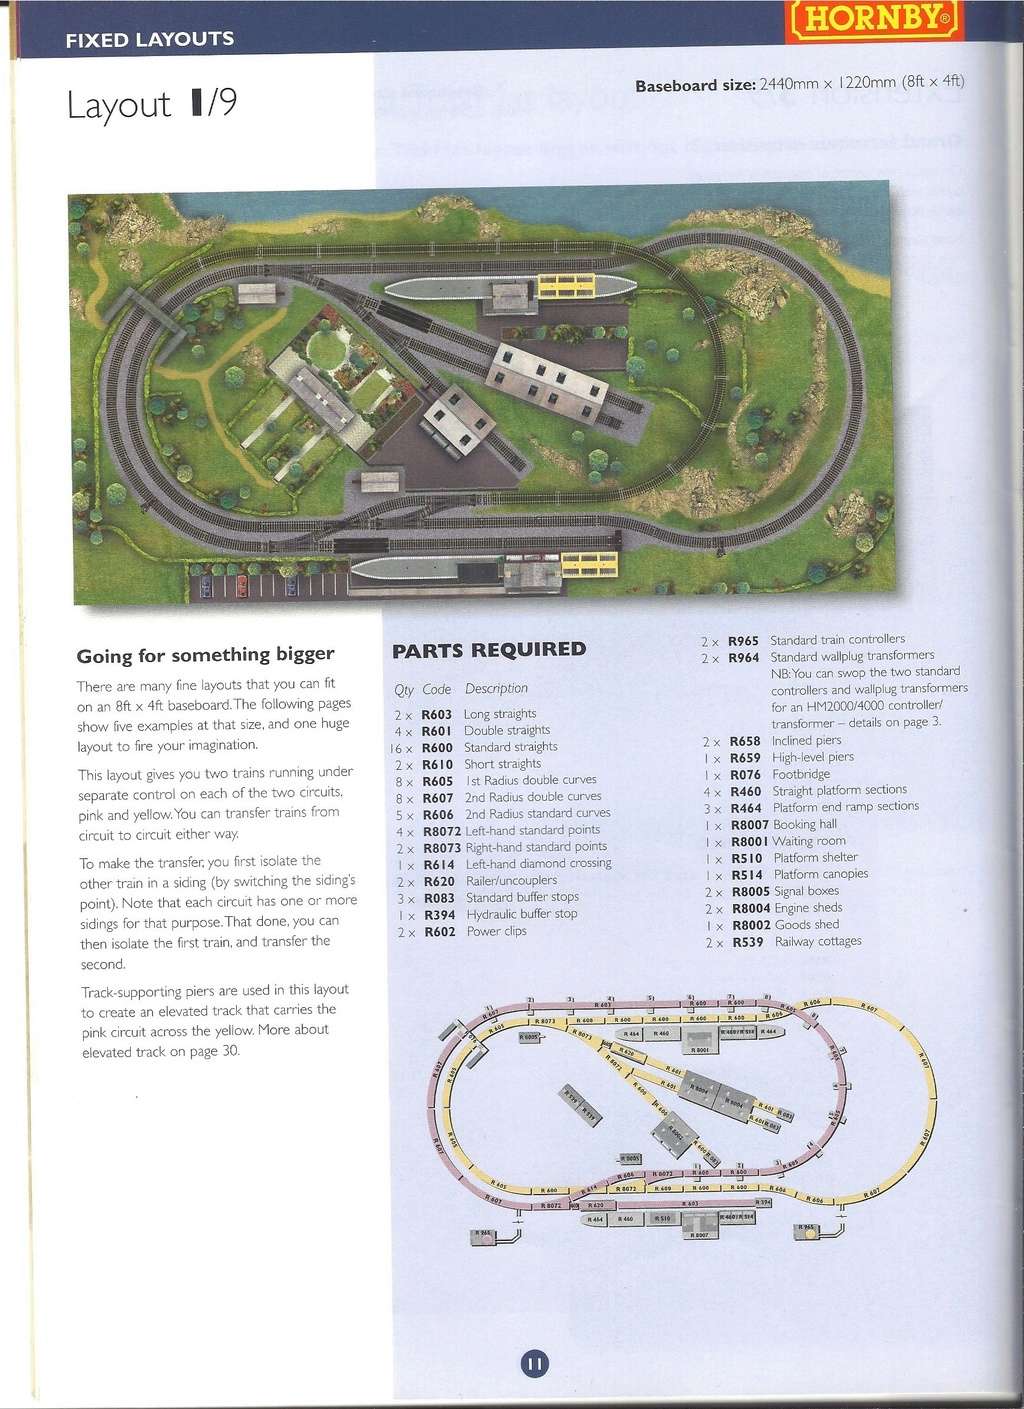 [HORNBY 2002] Plans de réseaux 9ème édition 2002 Hornb166